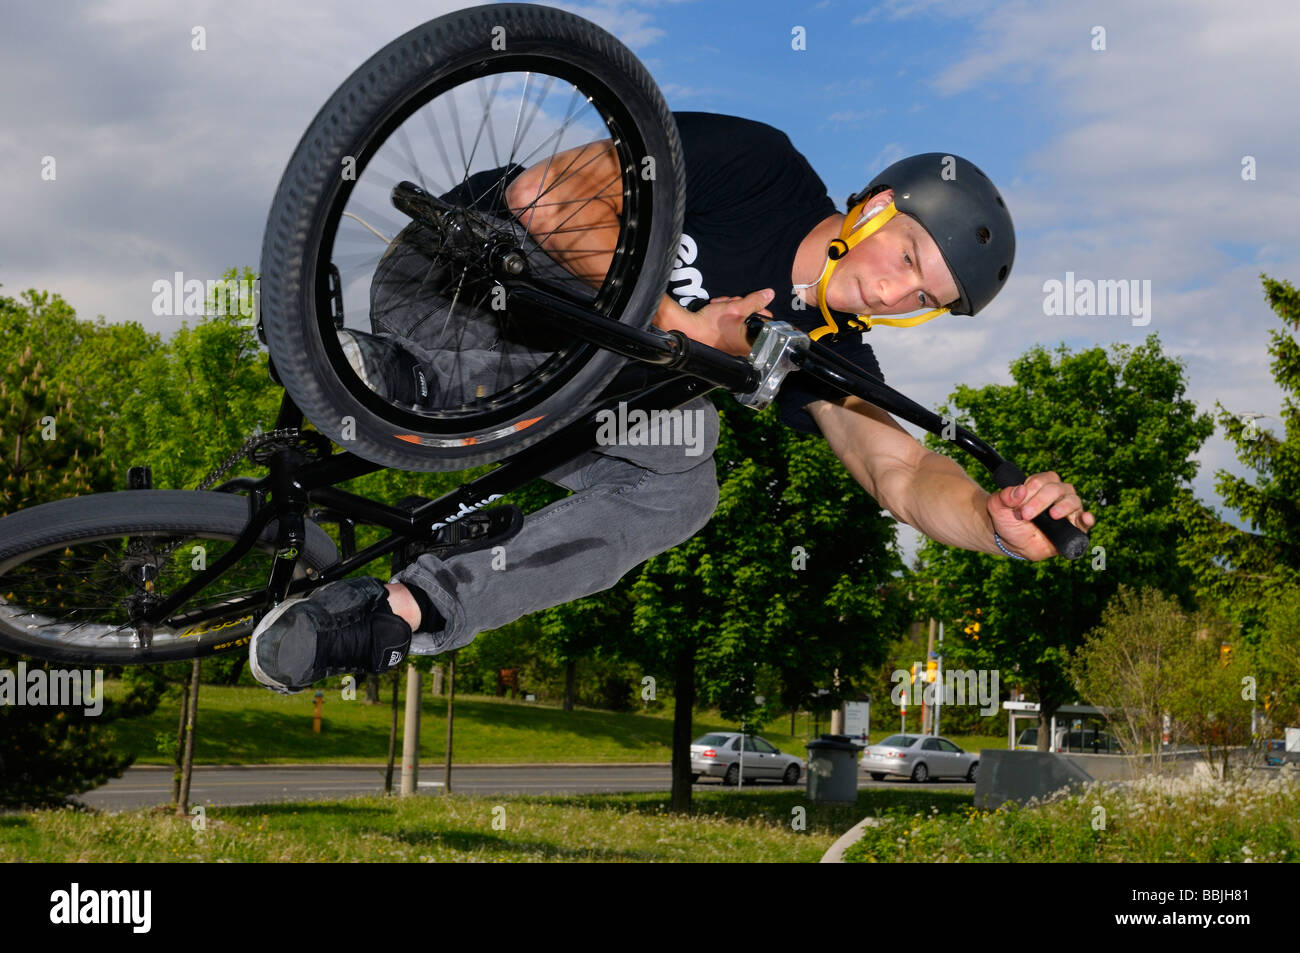 Airborne urban BMX Bike Reiter in einer Luft, die Tischplatte über den lokalen Verkehr an einem Toronto City Skatepark Stockfoto